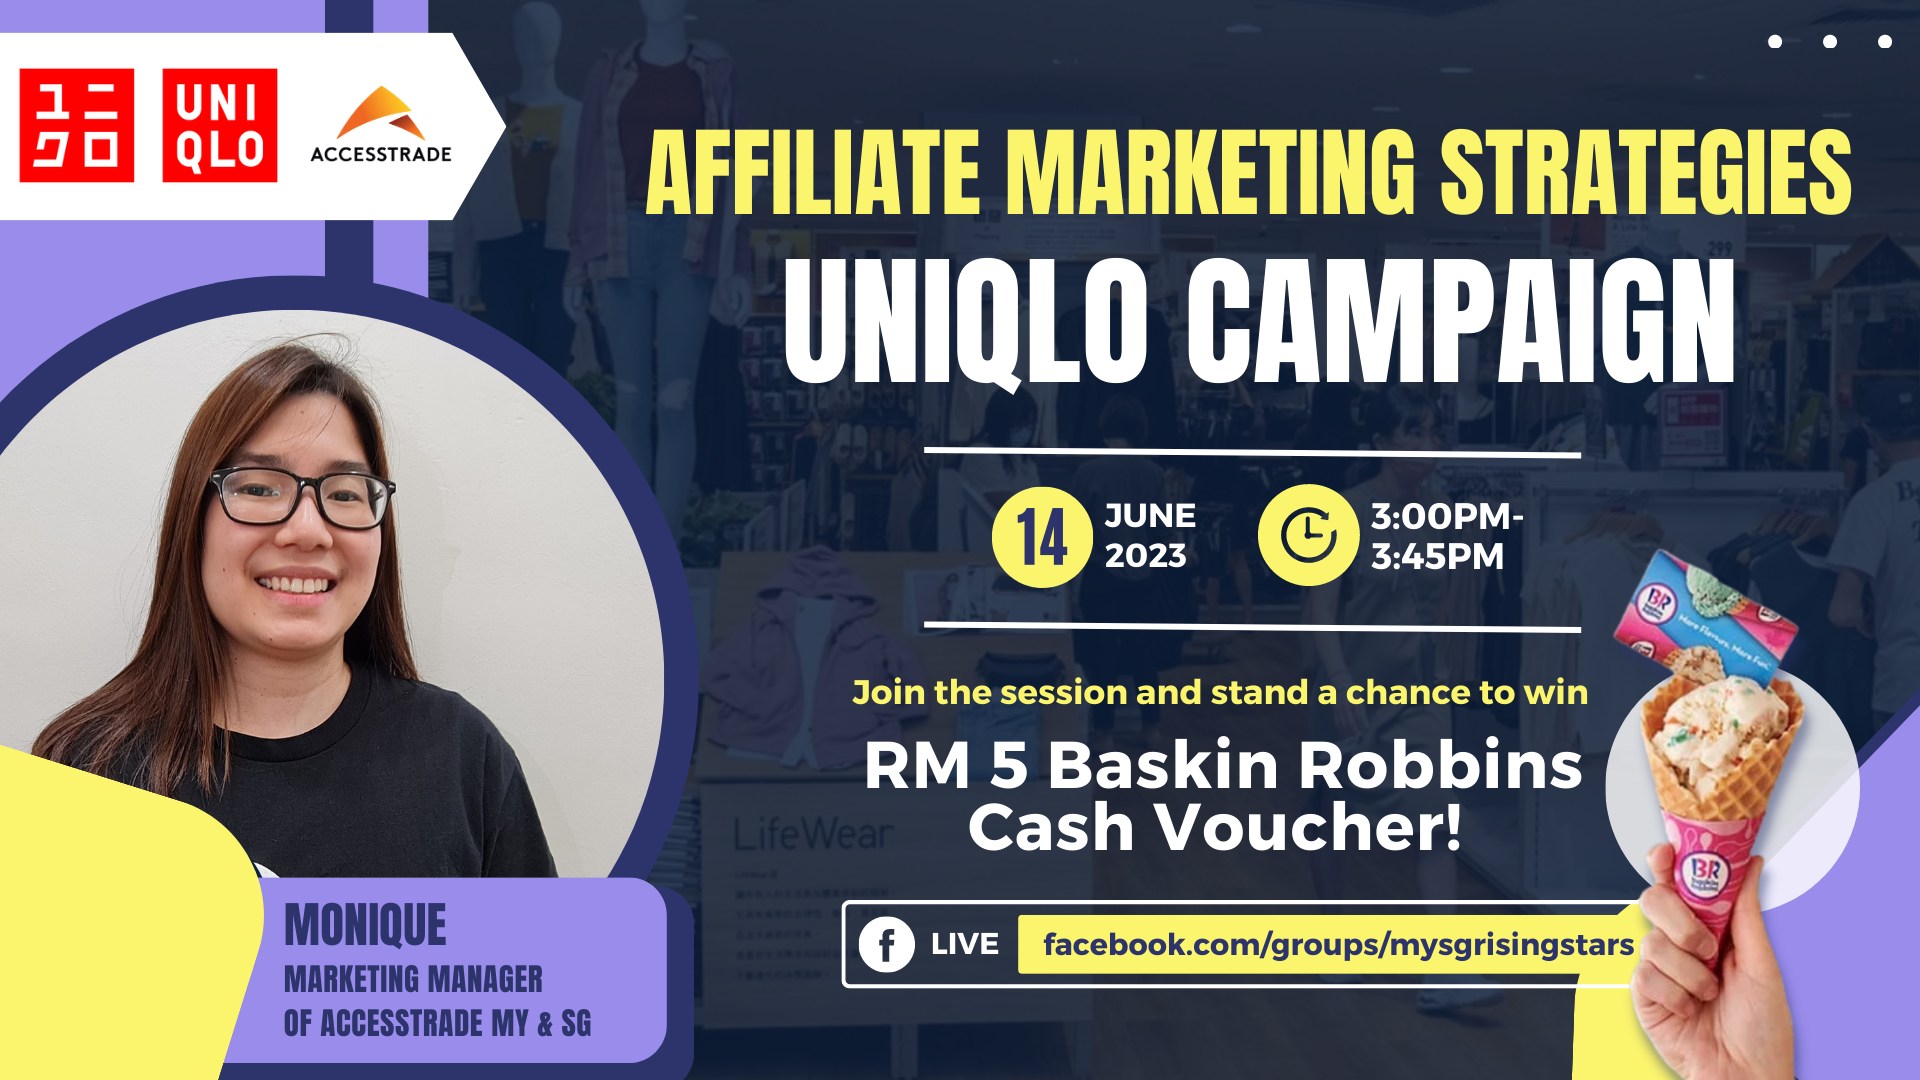 Affiliate Marketing Strategies for Uniqlo Campaign